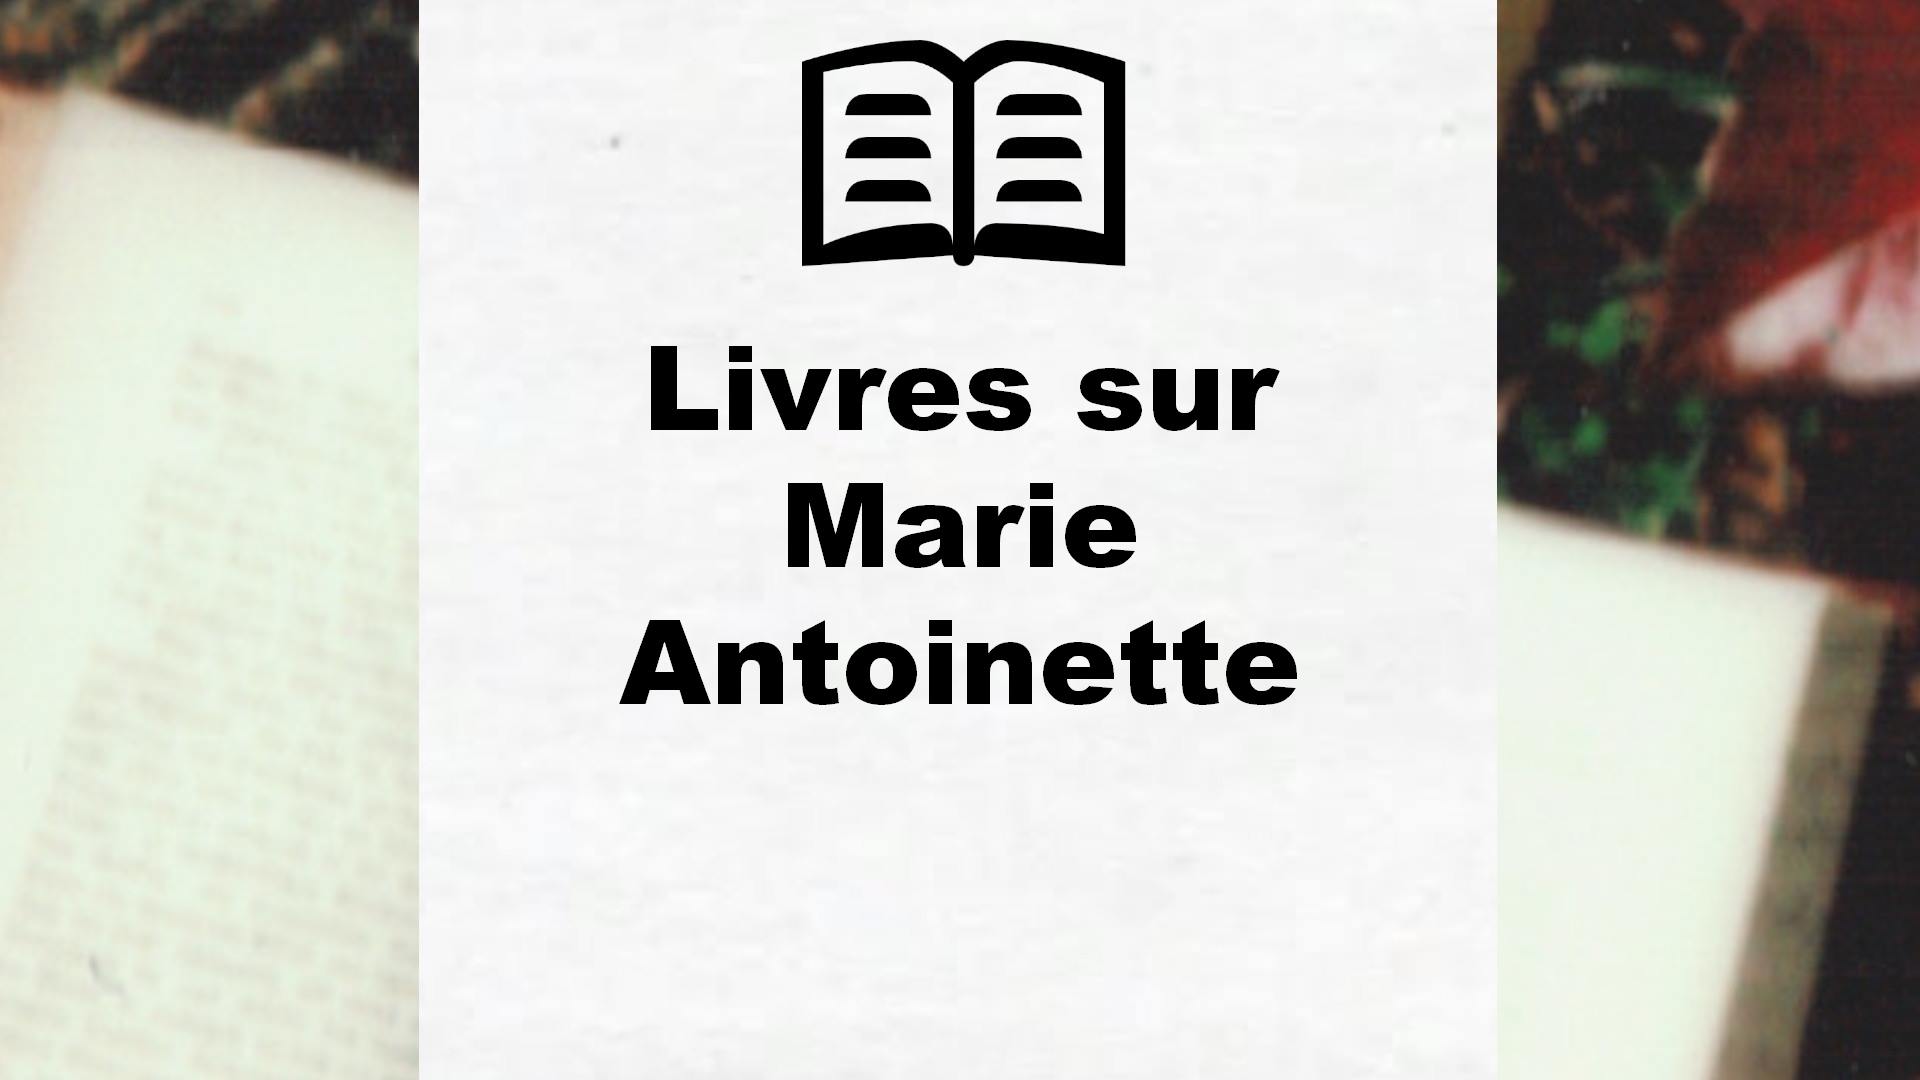 Livres sur Marie Antoinette